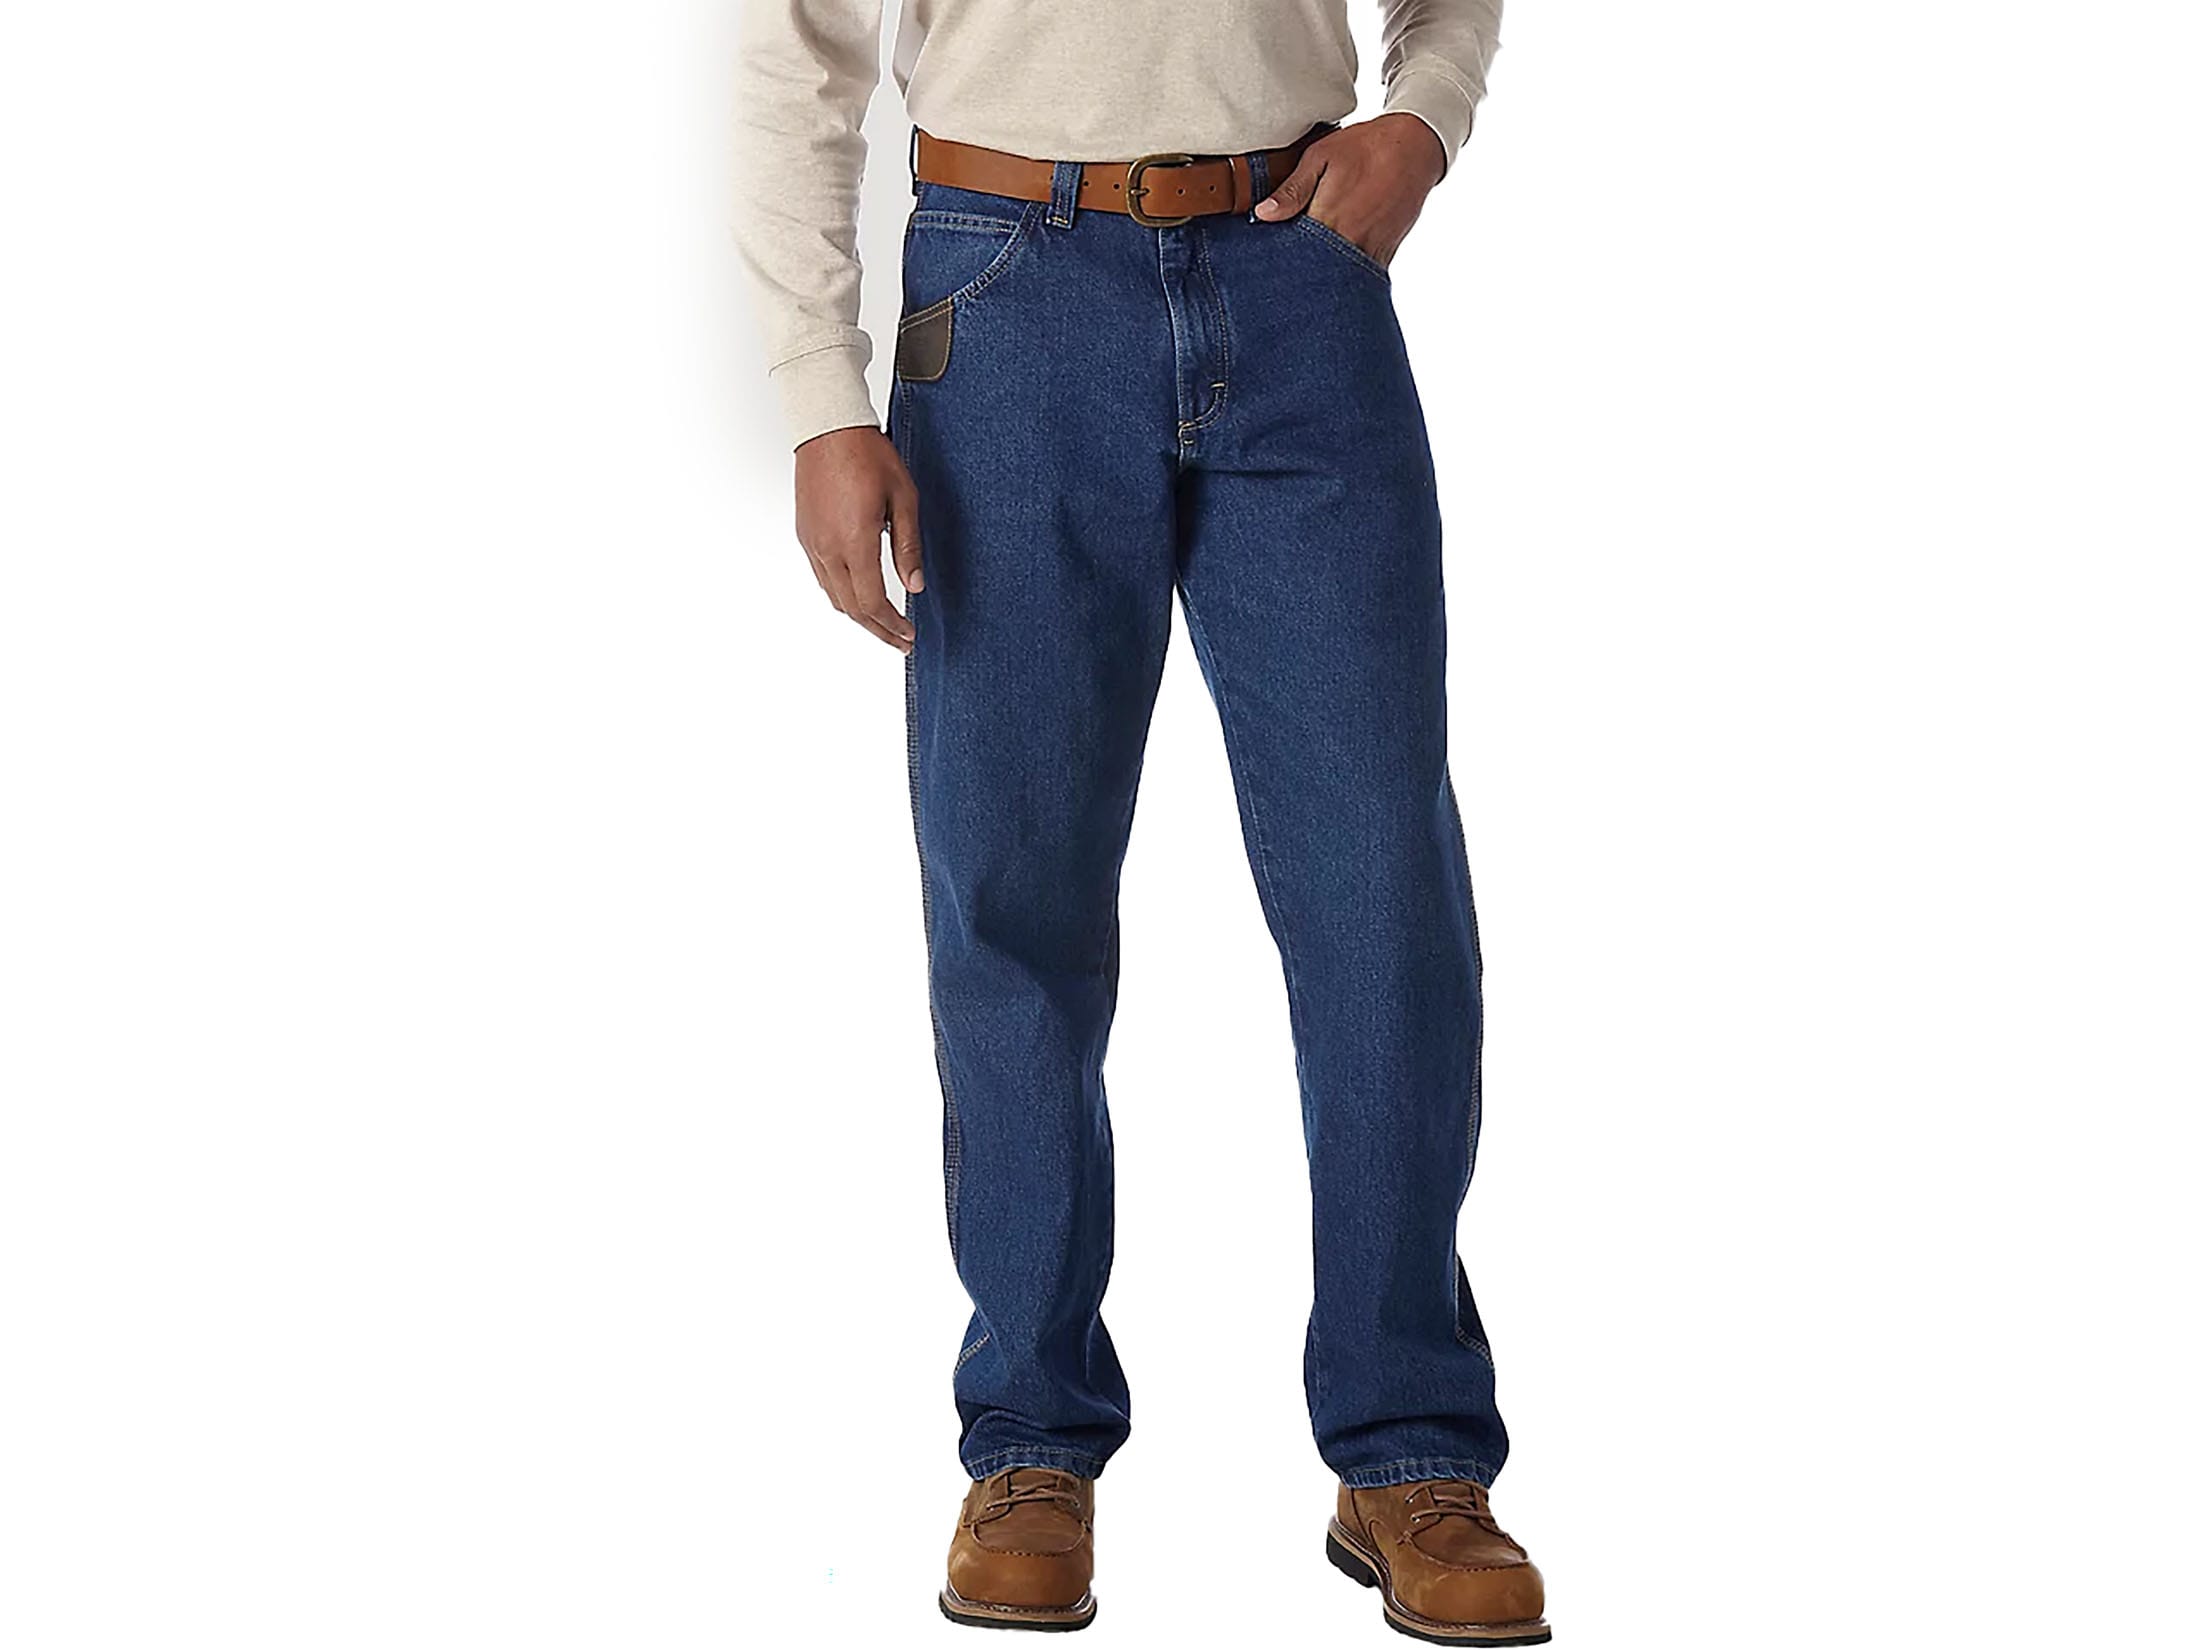 Wrangler Men's Riggs Carpenter Jeans Antique Indigo 32 Waist 34 Inseam